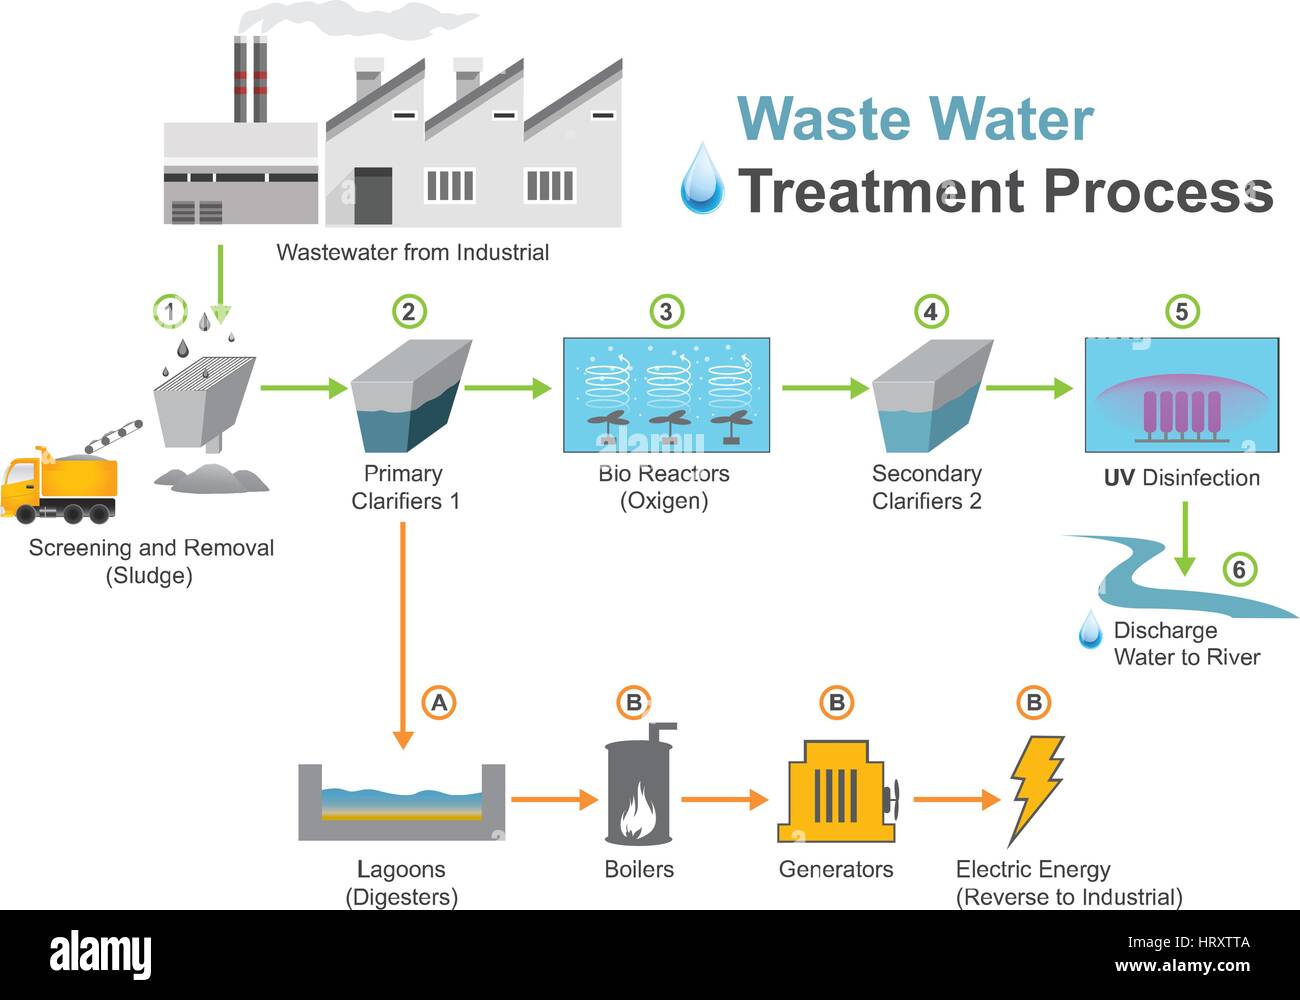 Abwasserreinigung ist ein Prozess verwendet, um Abwasser zu konvertieren, das Wasser nicht mehr erforderlich oder geeignet für seine letzte Verwendung in einem Abwasser, Stock Vektor